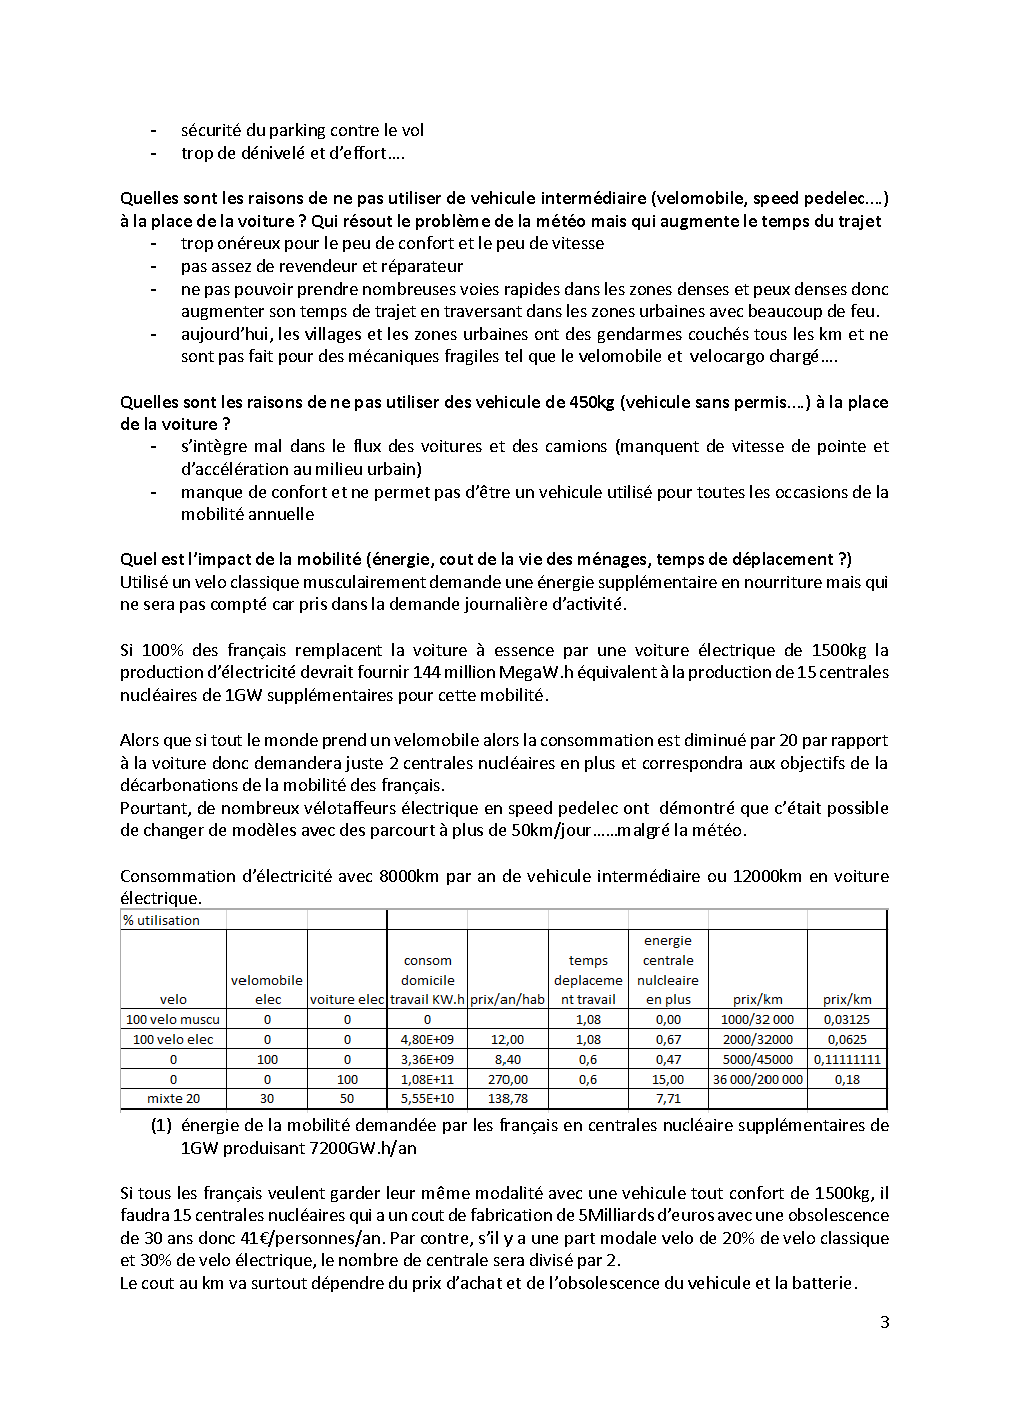 Engin electric de l'IUT de l' Aisne: 2021...reflexions sur la mobilité - Page 7 Mobili10